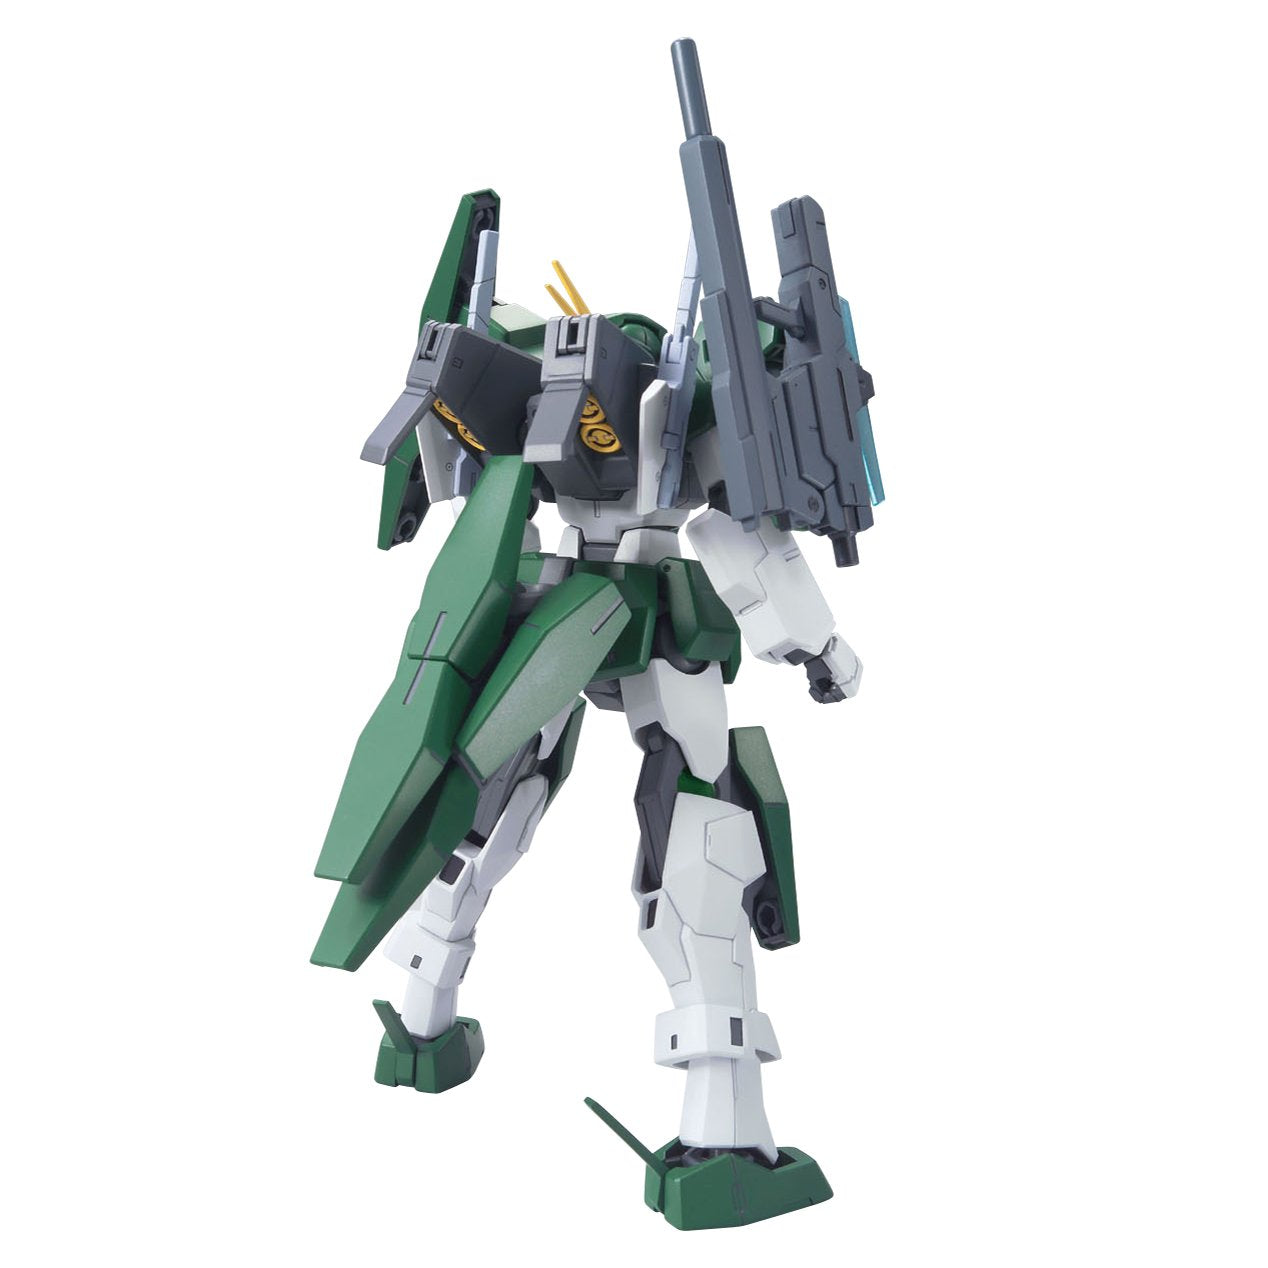 HG Cherudim Gundam 1/144